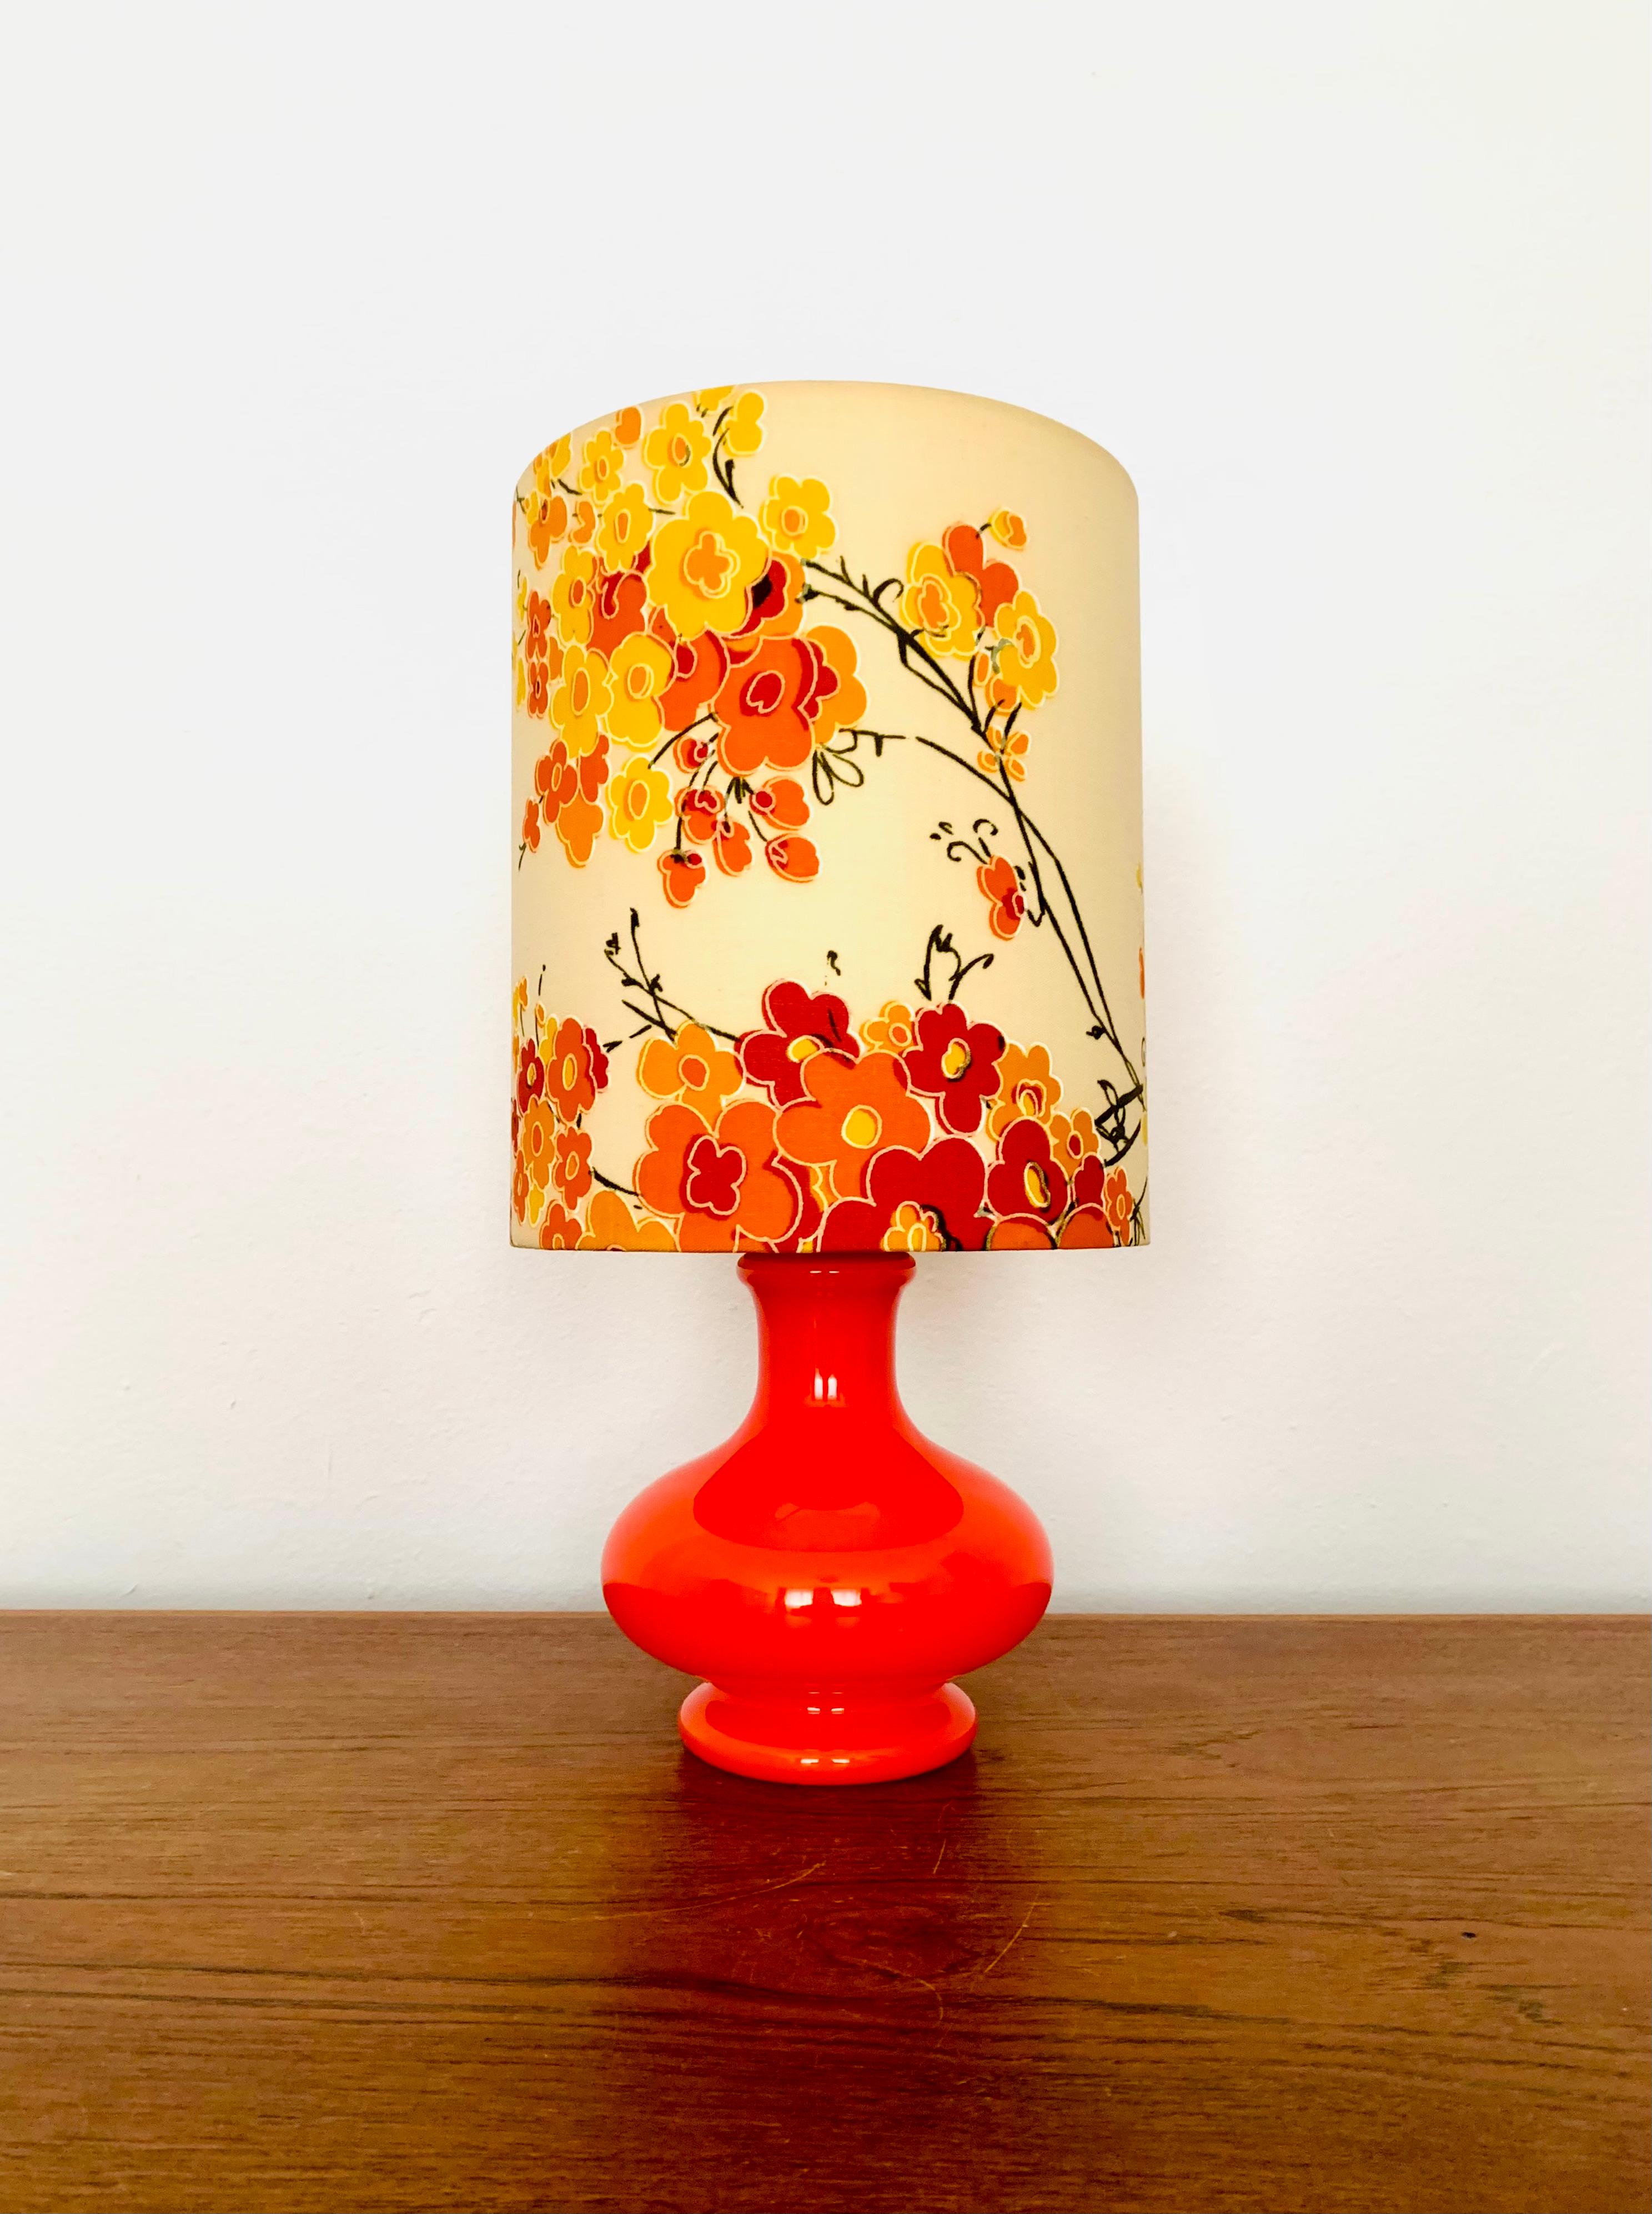 Jolie lampe de table en verre des années 1960.
La lampe est très noble et constitue un objet de design très particulier.
La base en verre illuminée crée une grande lumière.

Condit :

Très bon état vintage avec des signes d'usure dus à l'âge.
Légers